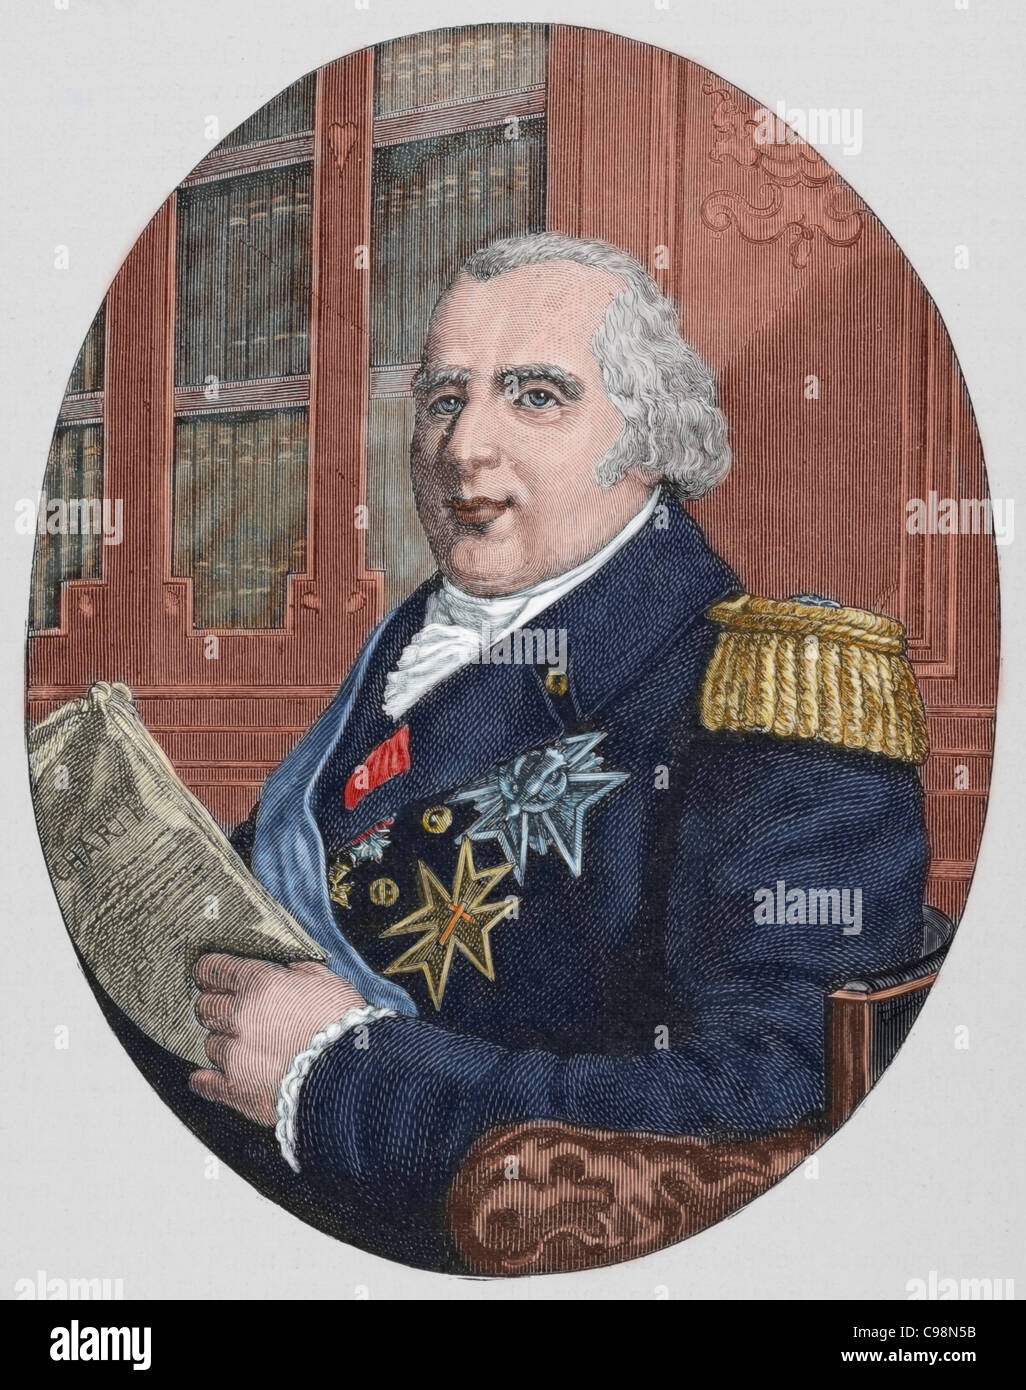 Louis XVIII (1755-1824). König von Frankreich von 1814 / 15 und 1815-24. Bruder von Ludwig XVI. Farbige Gravur. Stockfoto